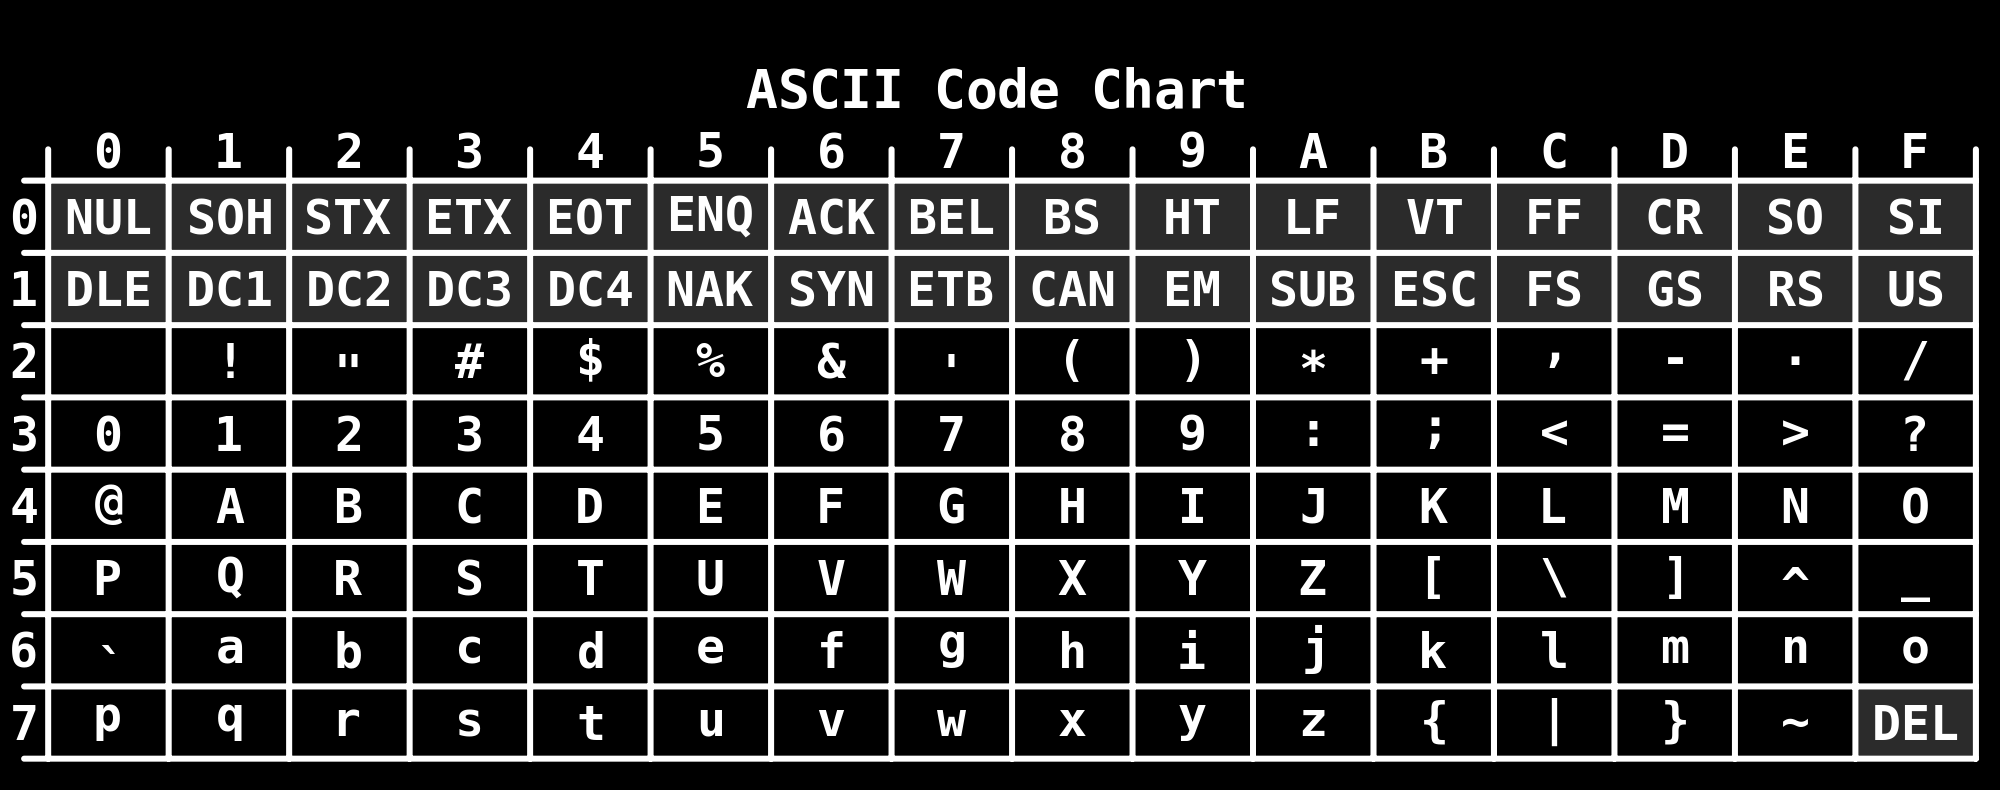 Figure 1: Il codice ASCII usa come encoding quello mostrato in echo $LANG, che di solito è UTF-8 (che contiene il codice ASCII di Figura 1) Quindi, ogni sequenza di byte letta dal file viene stampata